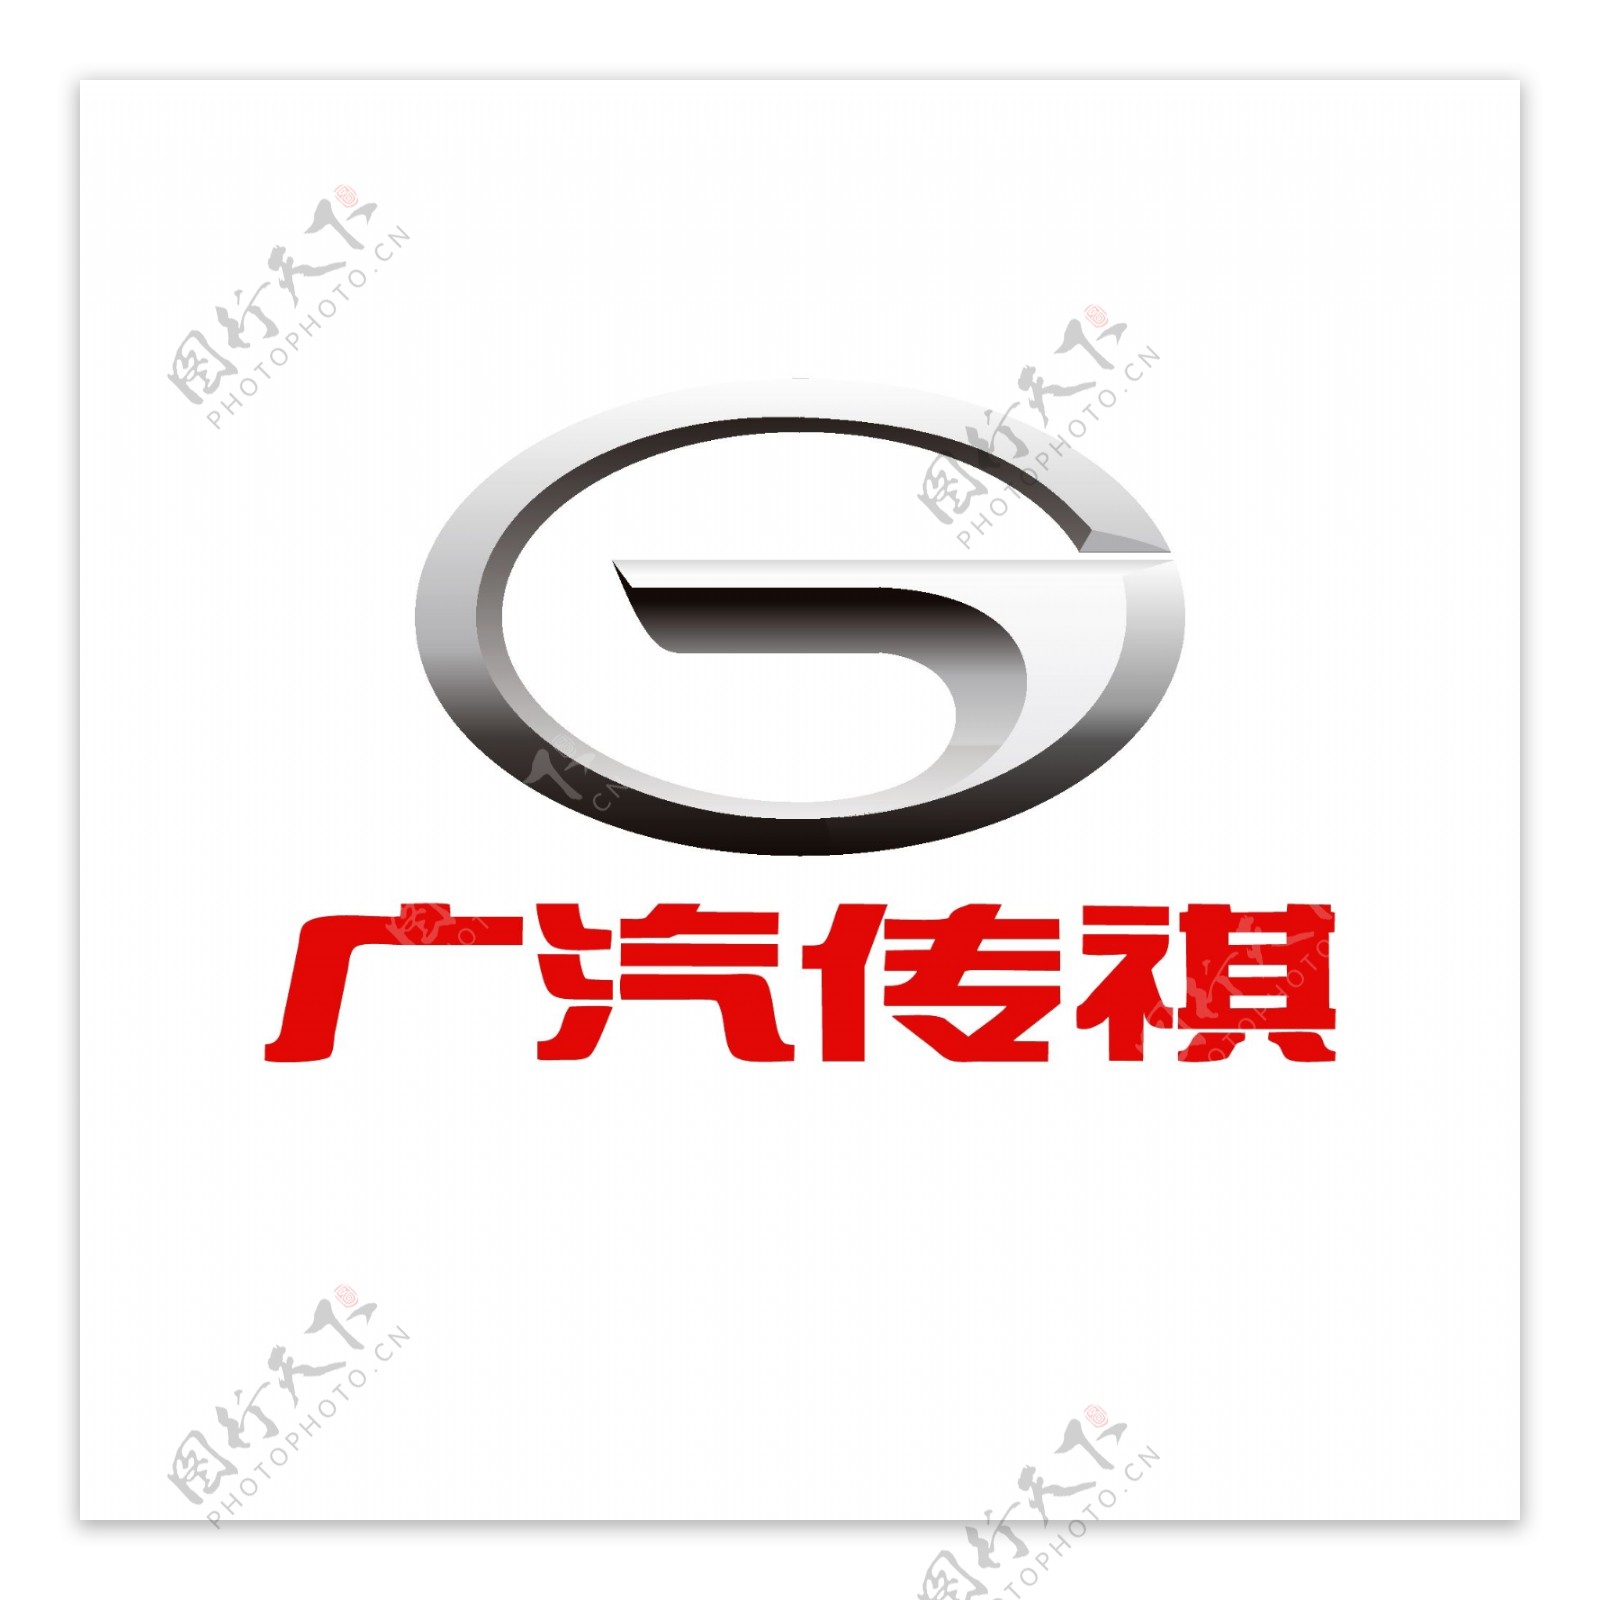 广汽传祺logo